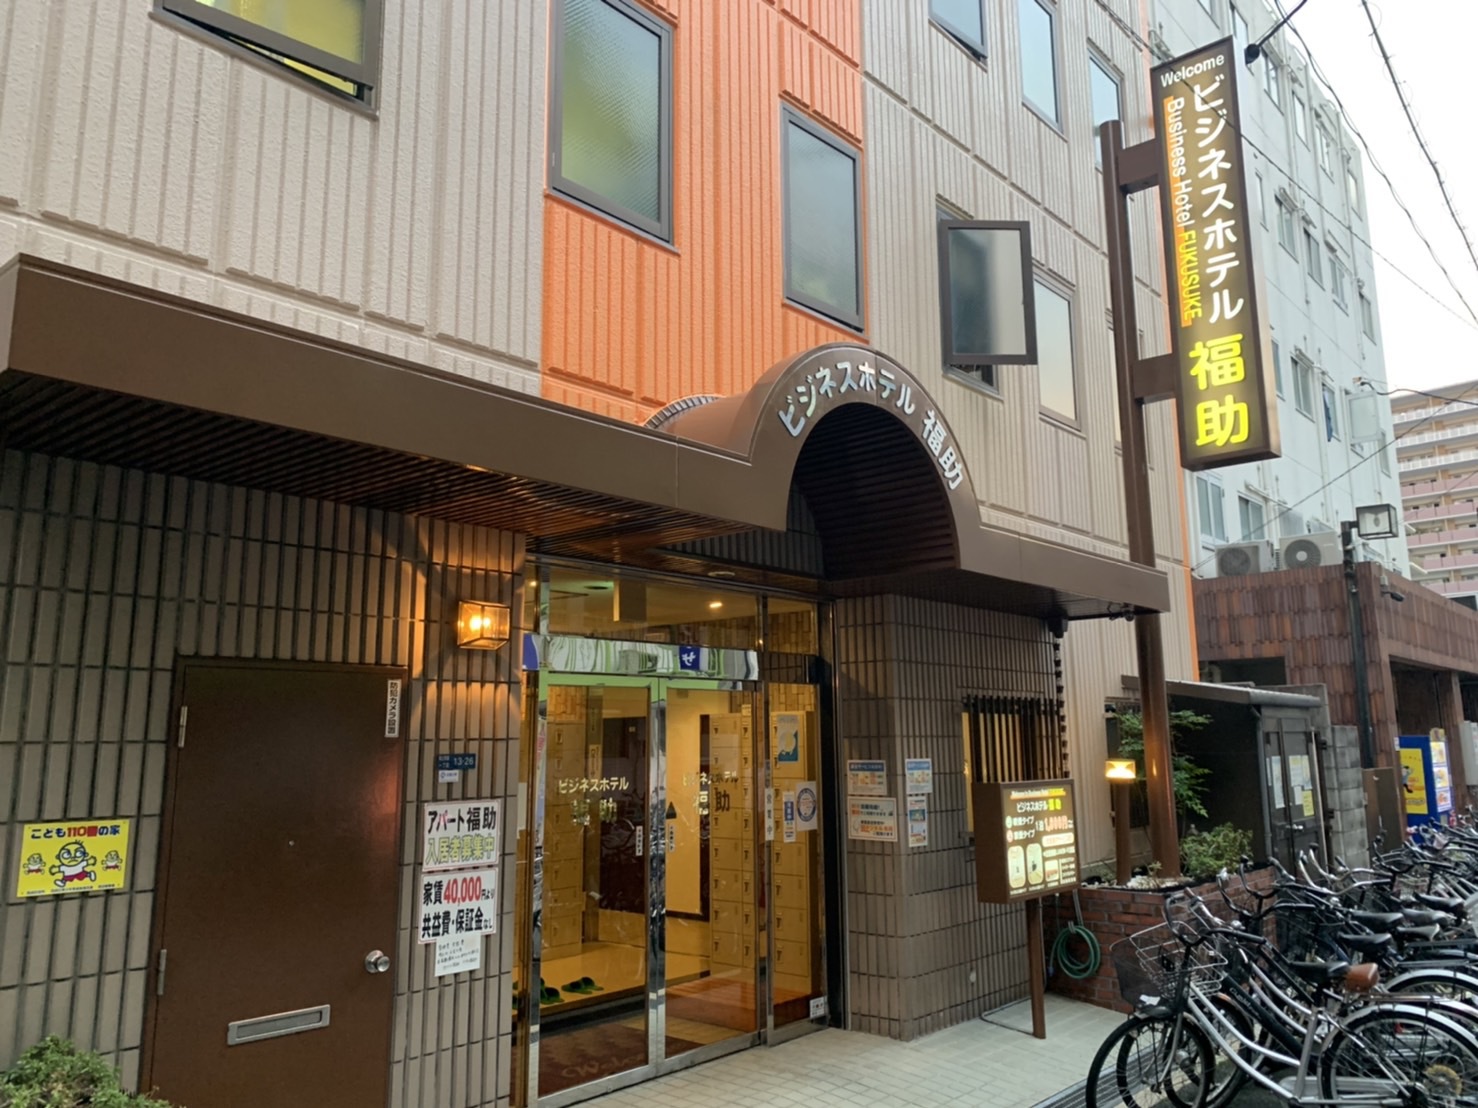 大阪で連泊 長期滞在ができる格安のビジネスホテルは だれどこ